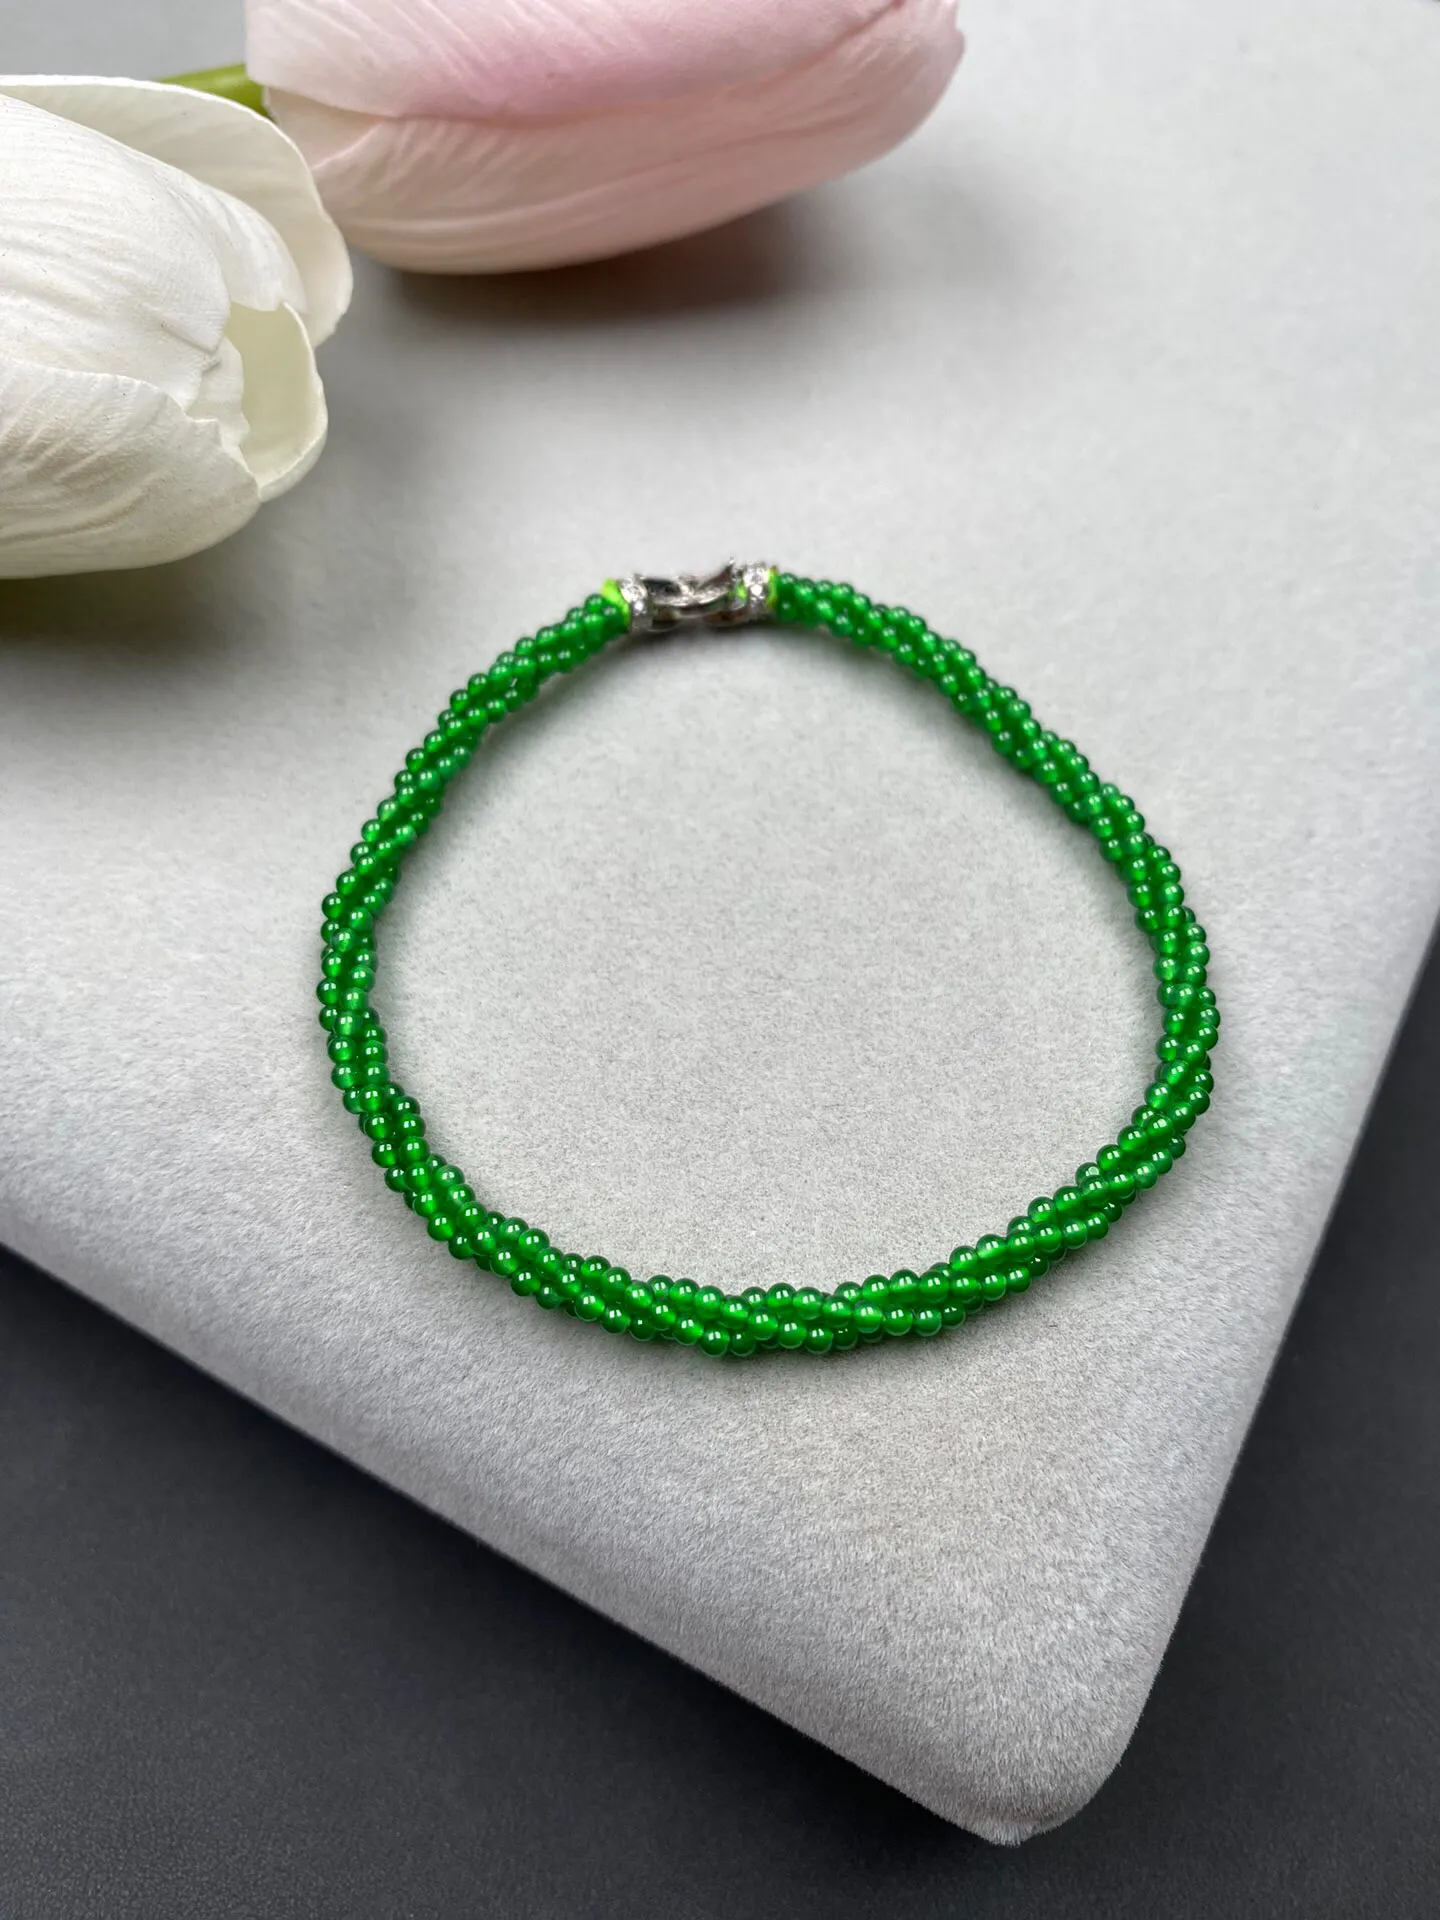 冰种满绿小米珠手串 颗数约290+珠径2毫米 翠色艳丽 独特精美